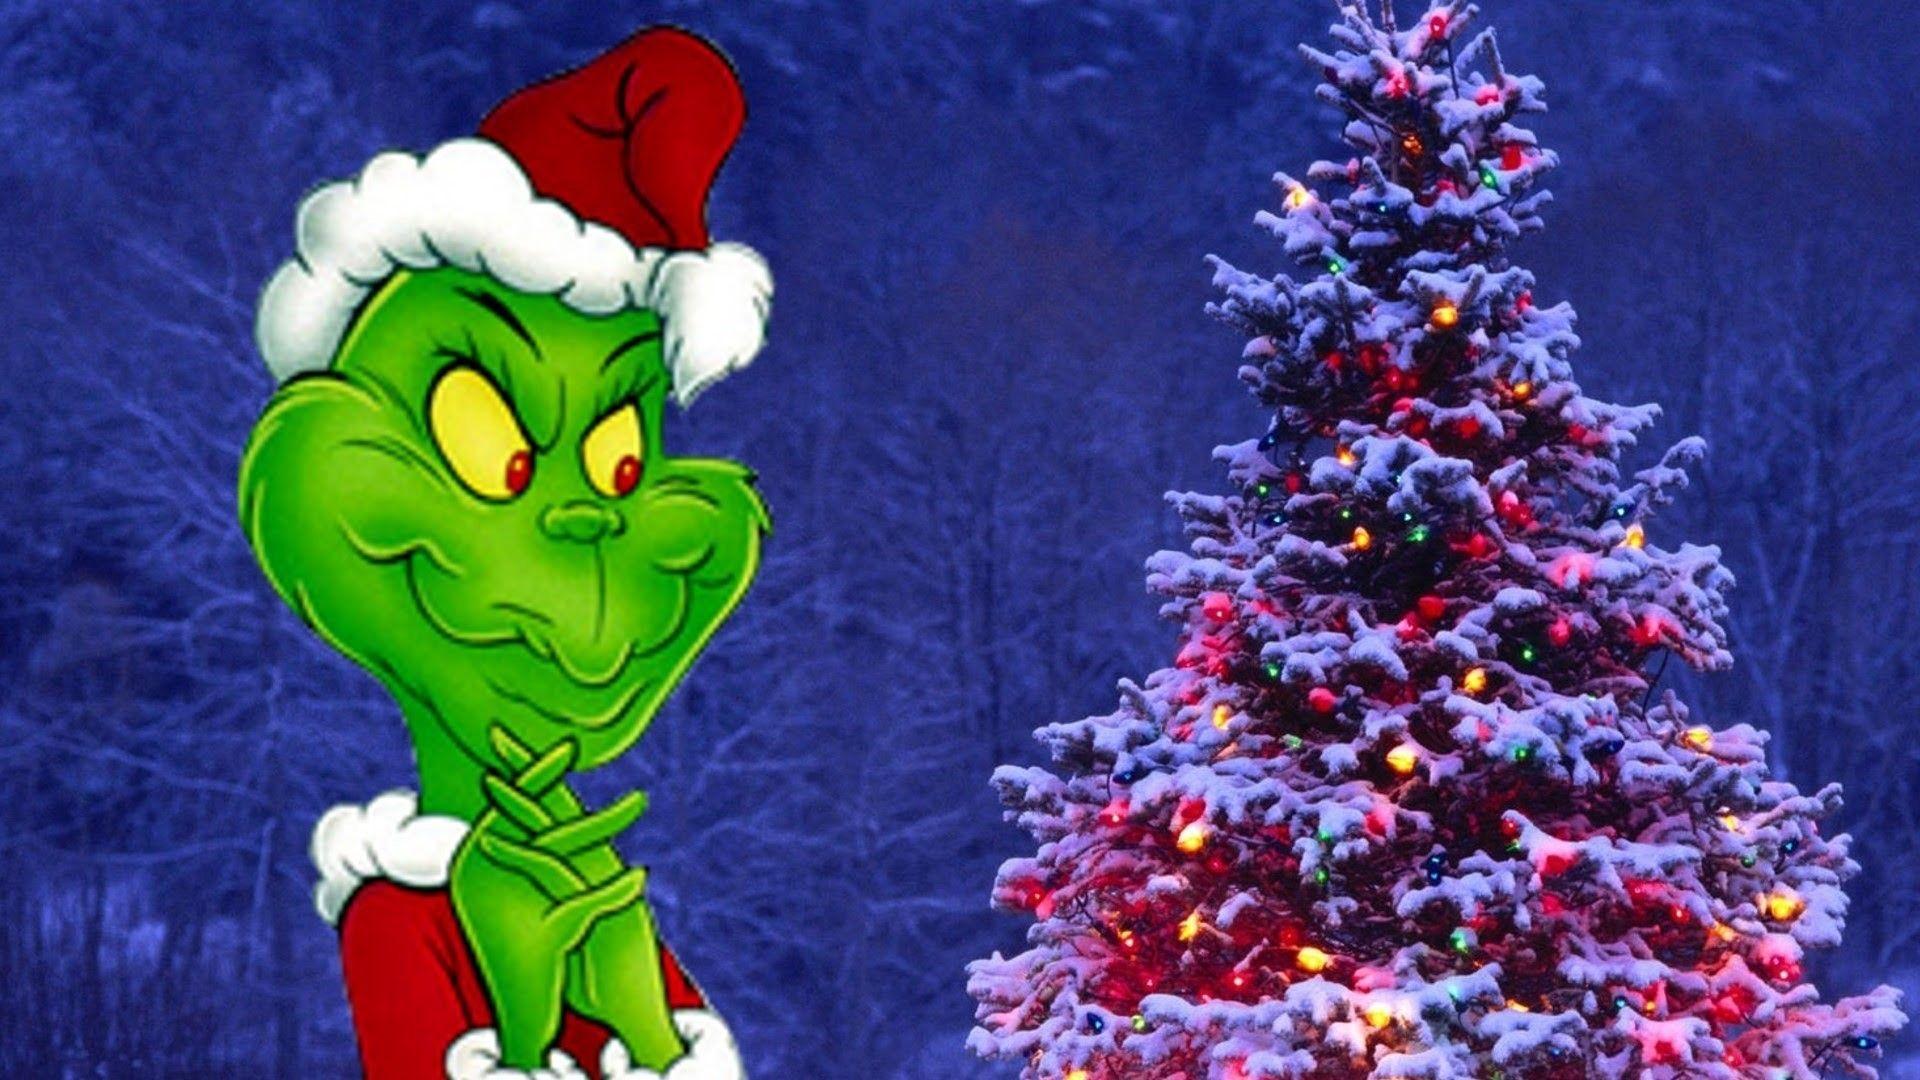 Hình nền How the Grinch Stole Christmas sẽ đem lại cho bạn niềm vui của mùa lễ hội. Bạn sẽ cảm nhận được sự ấm áp, hạnh phúc, và sự cổ điển trong hình ảnh này. Hãy để hình nền How the Grinch Stole Christmas gợi nhắc cho bạn về một mùa Giáng sinh ấm áp và đầy ý nghĩa.